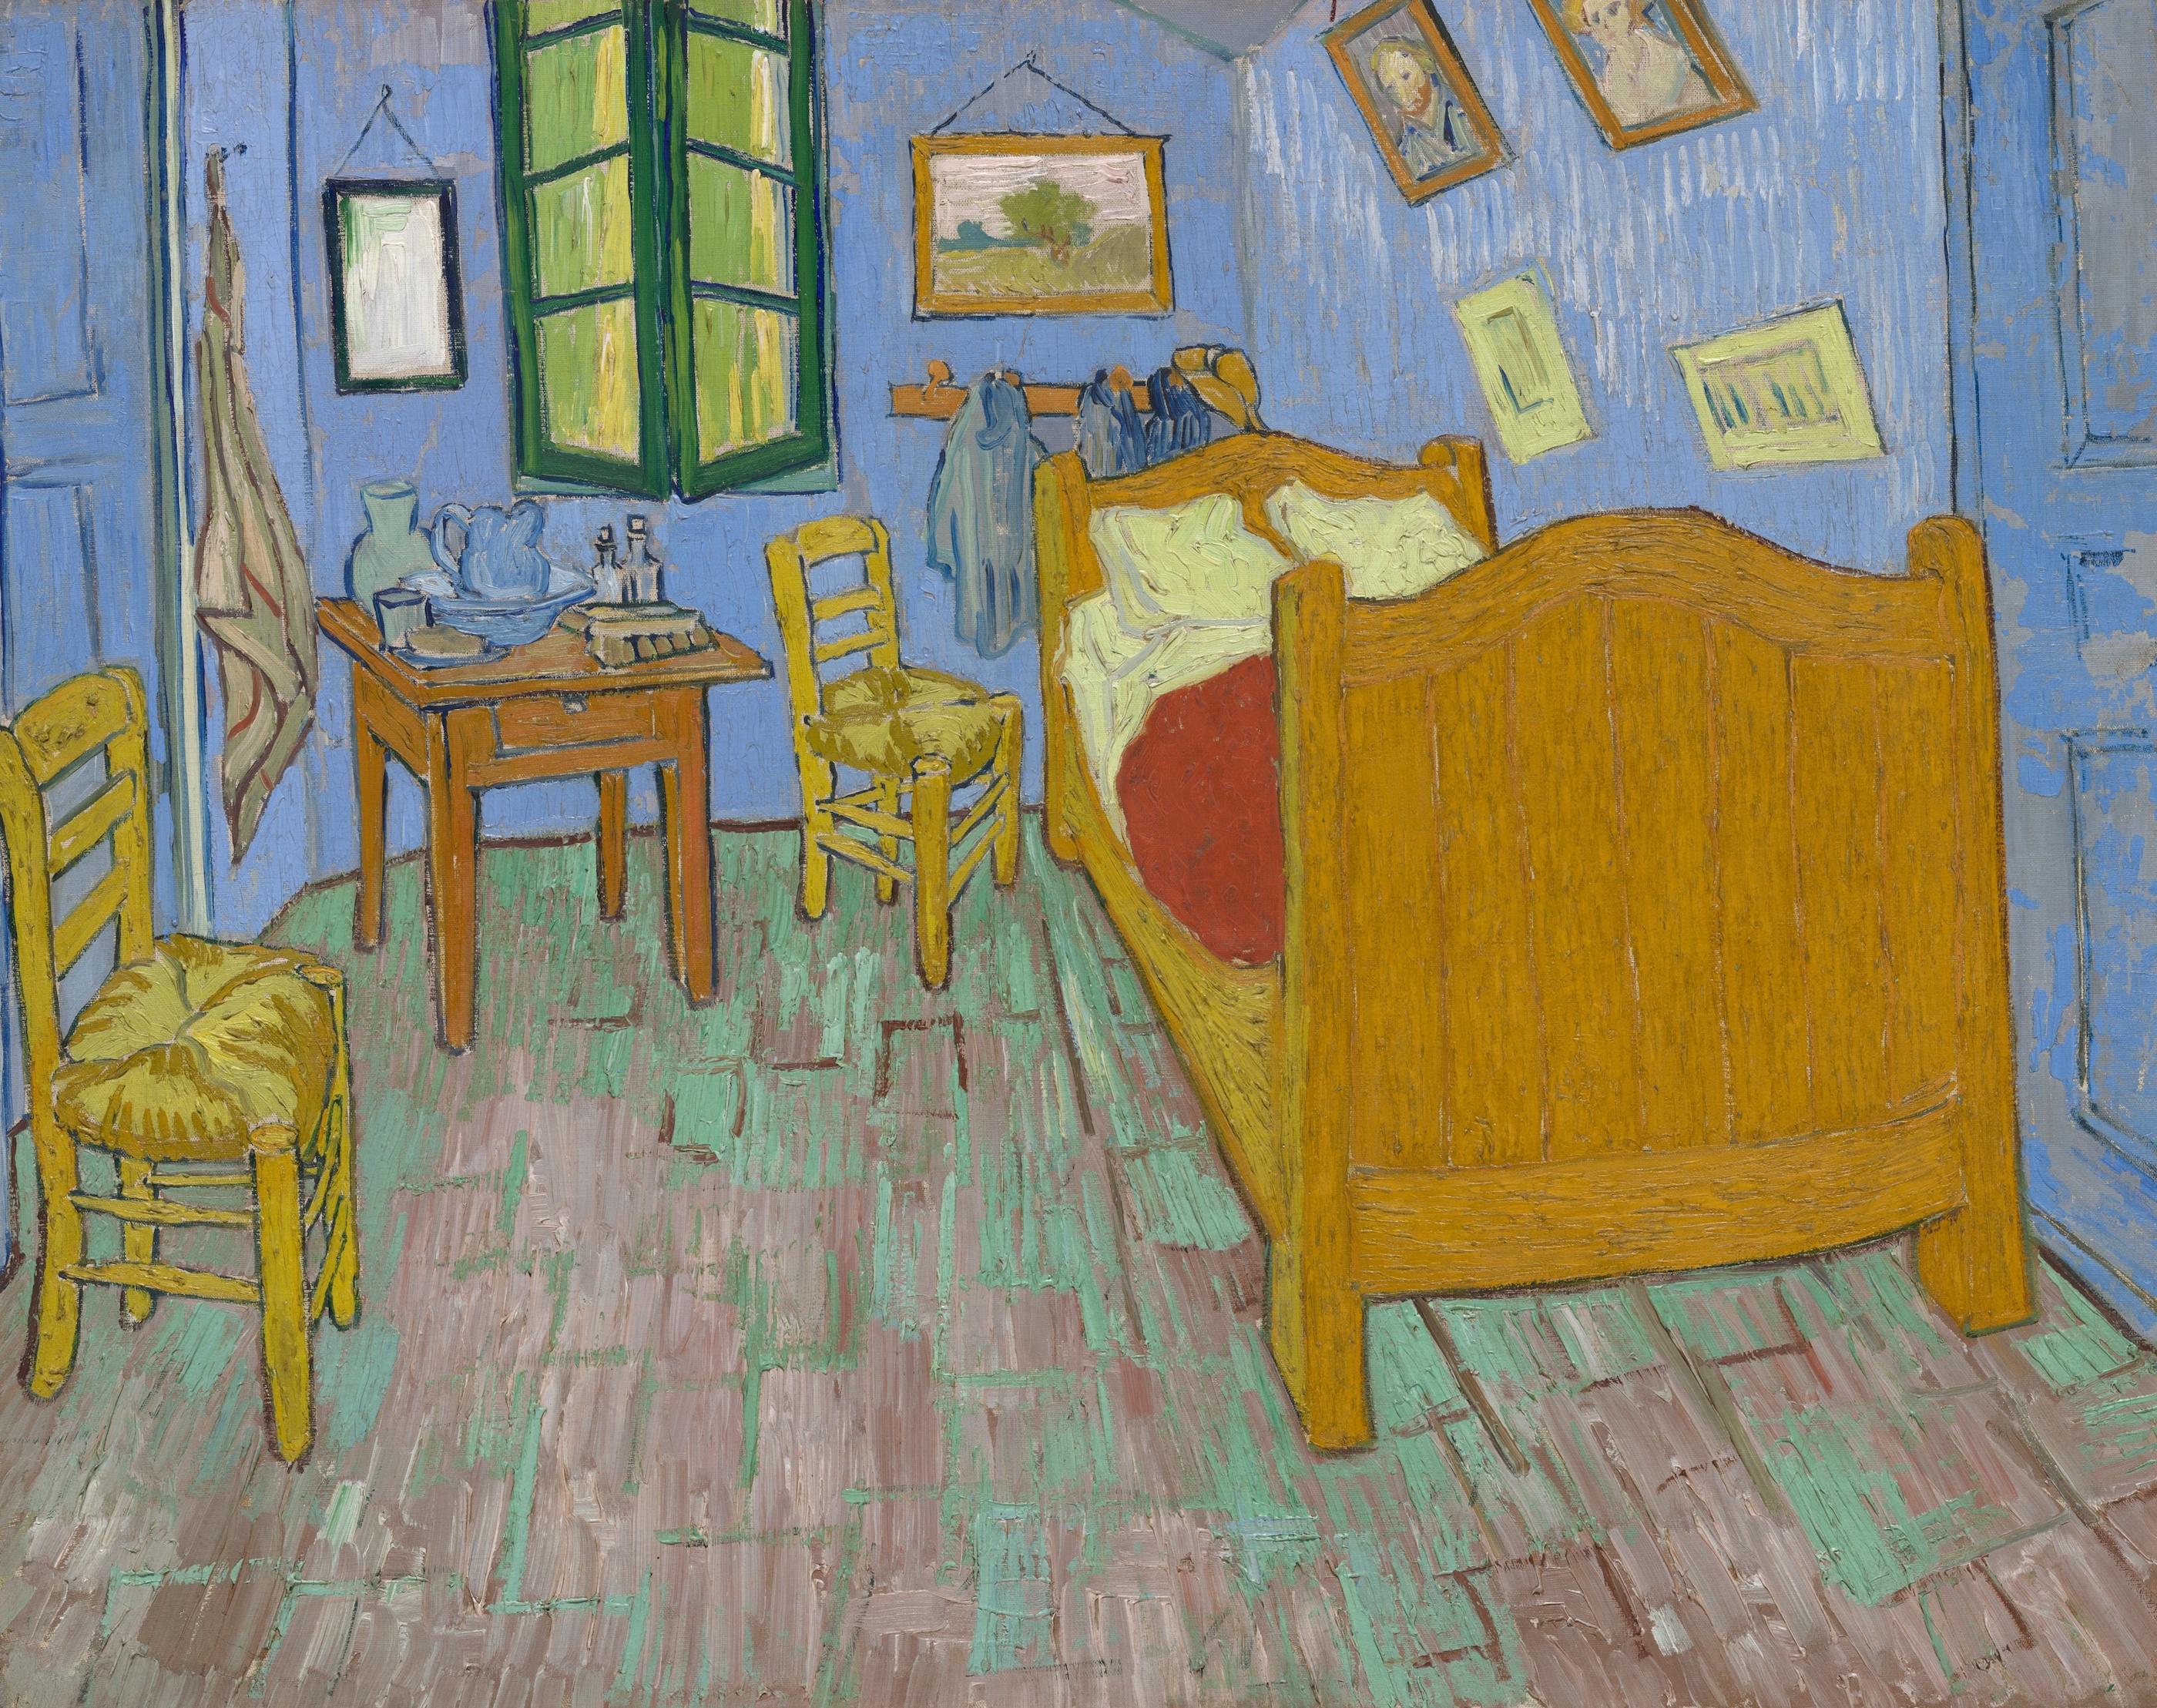 El dormitorio en Arlés by Vincent van Gogh - 1889 - 73.6 × 92.3 cm Instituto de Arte de Chicago